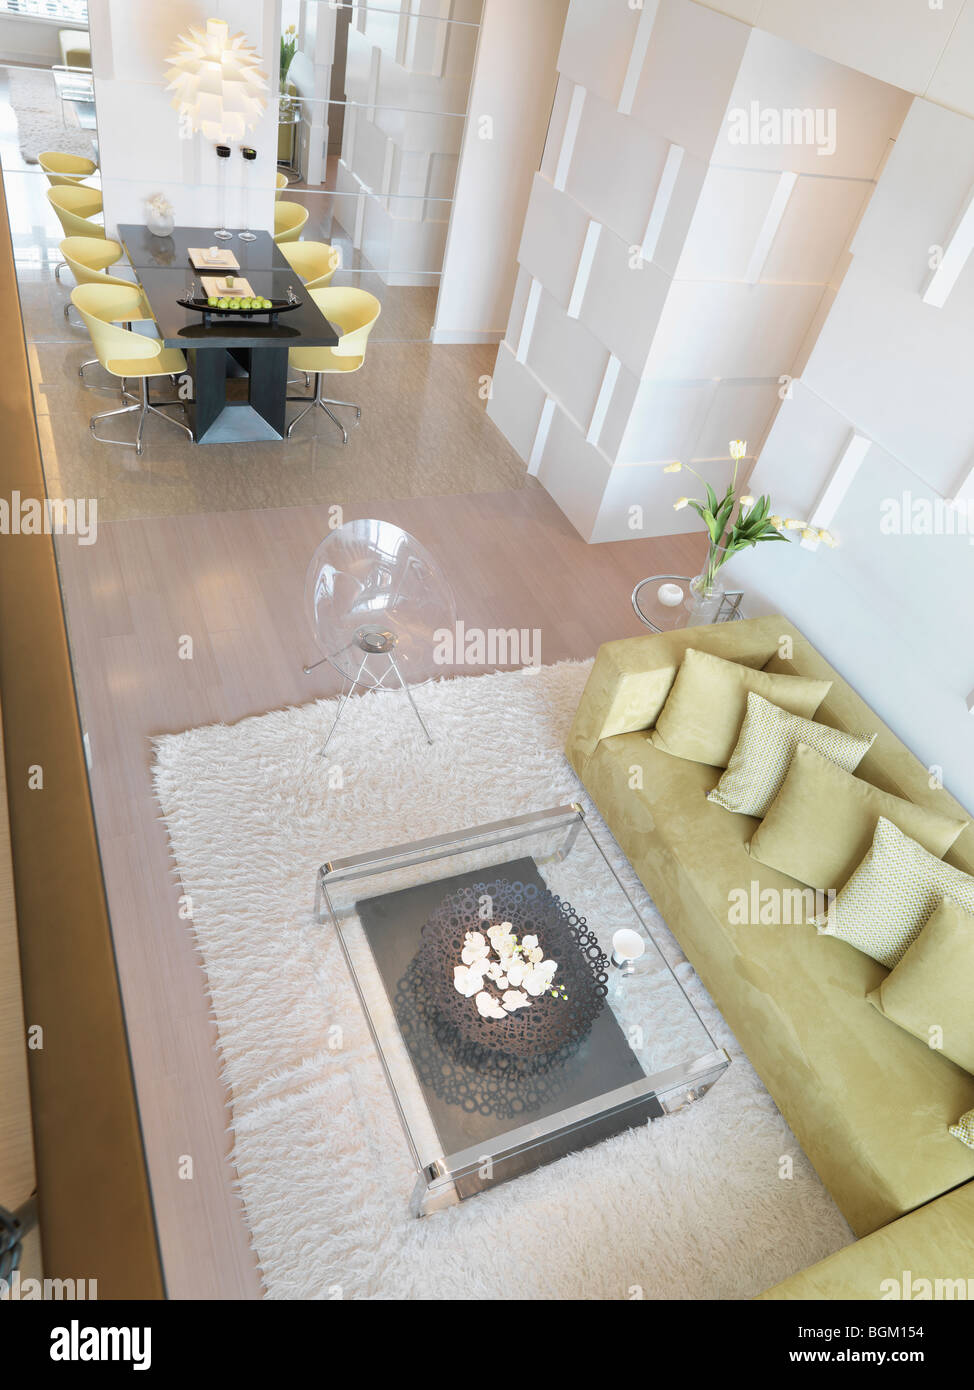 Vue aérienne du salon moderne avec mobilier vert lime Banque D'Images